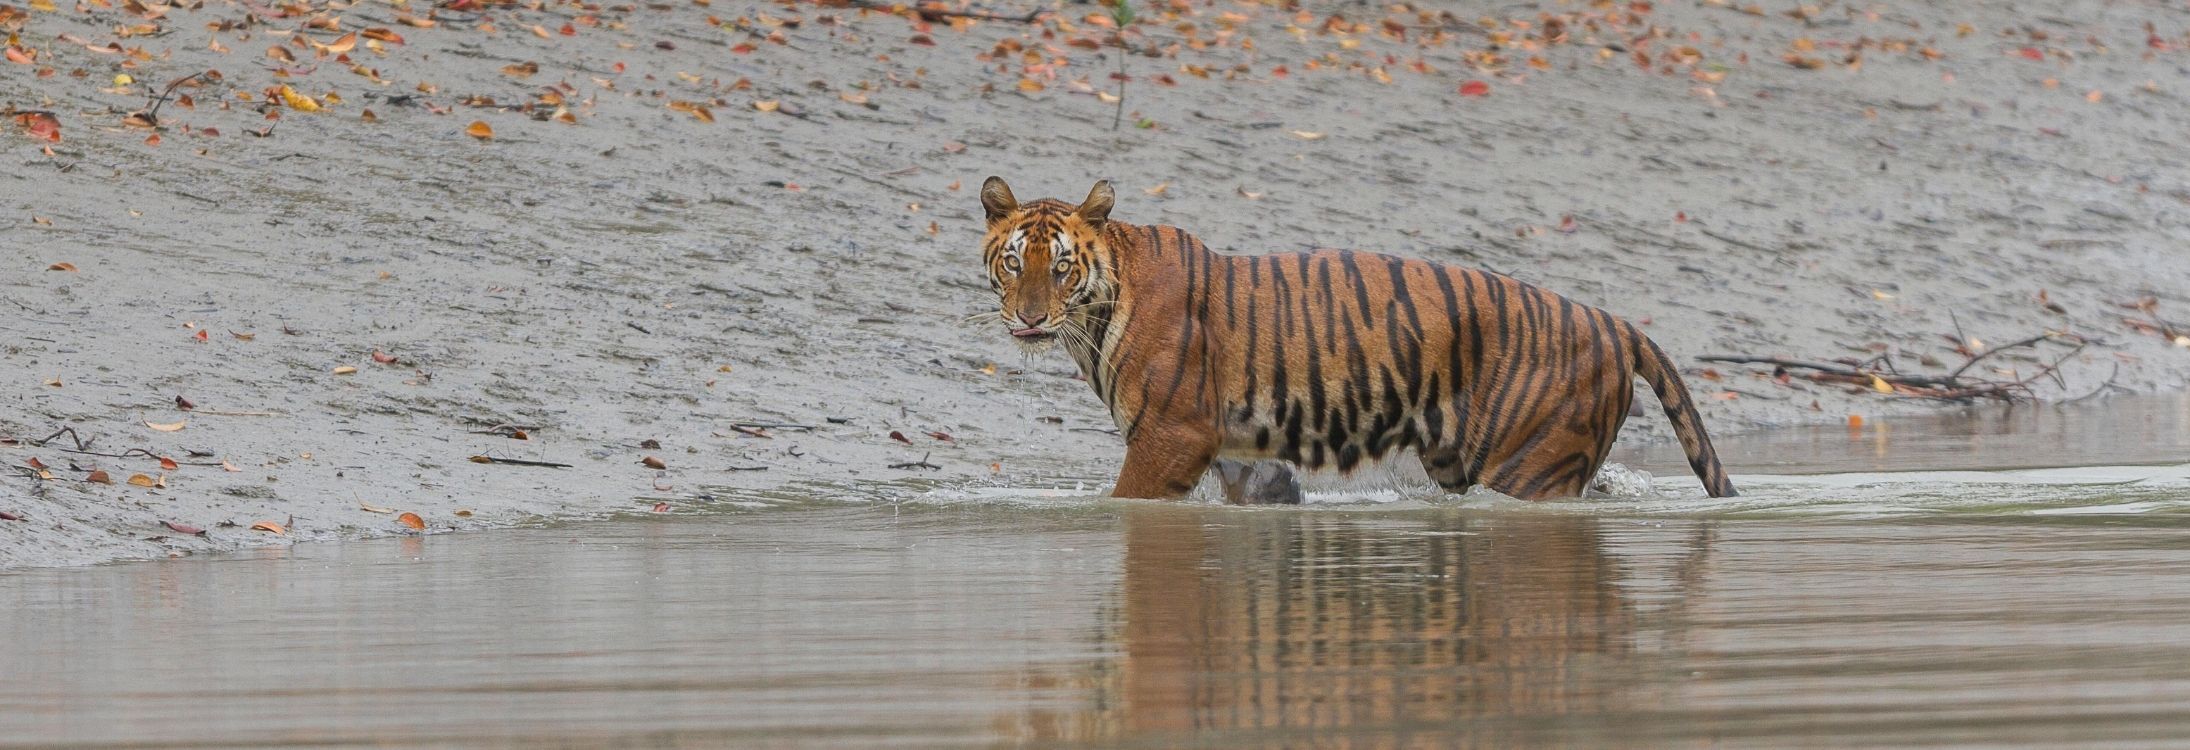 Sundarban National Park, West Bengal